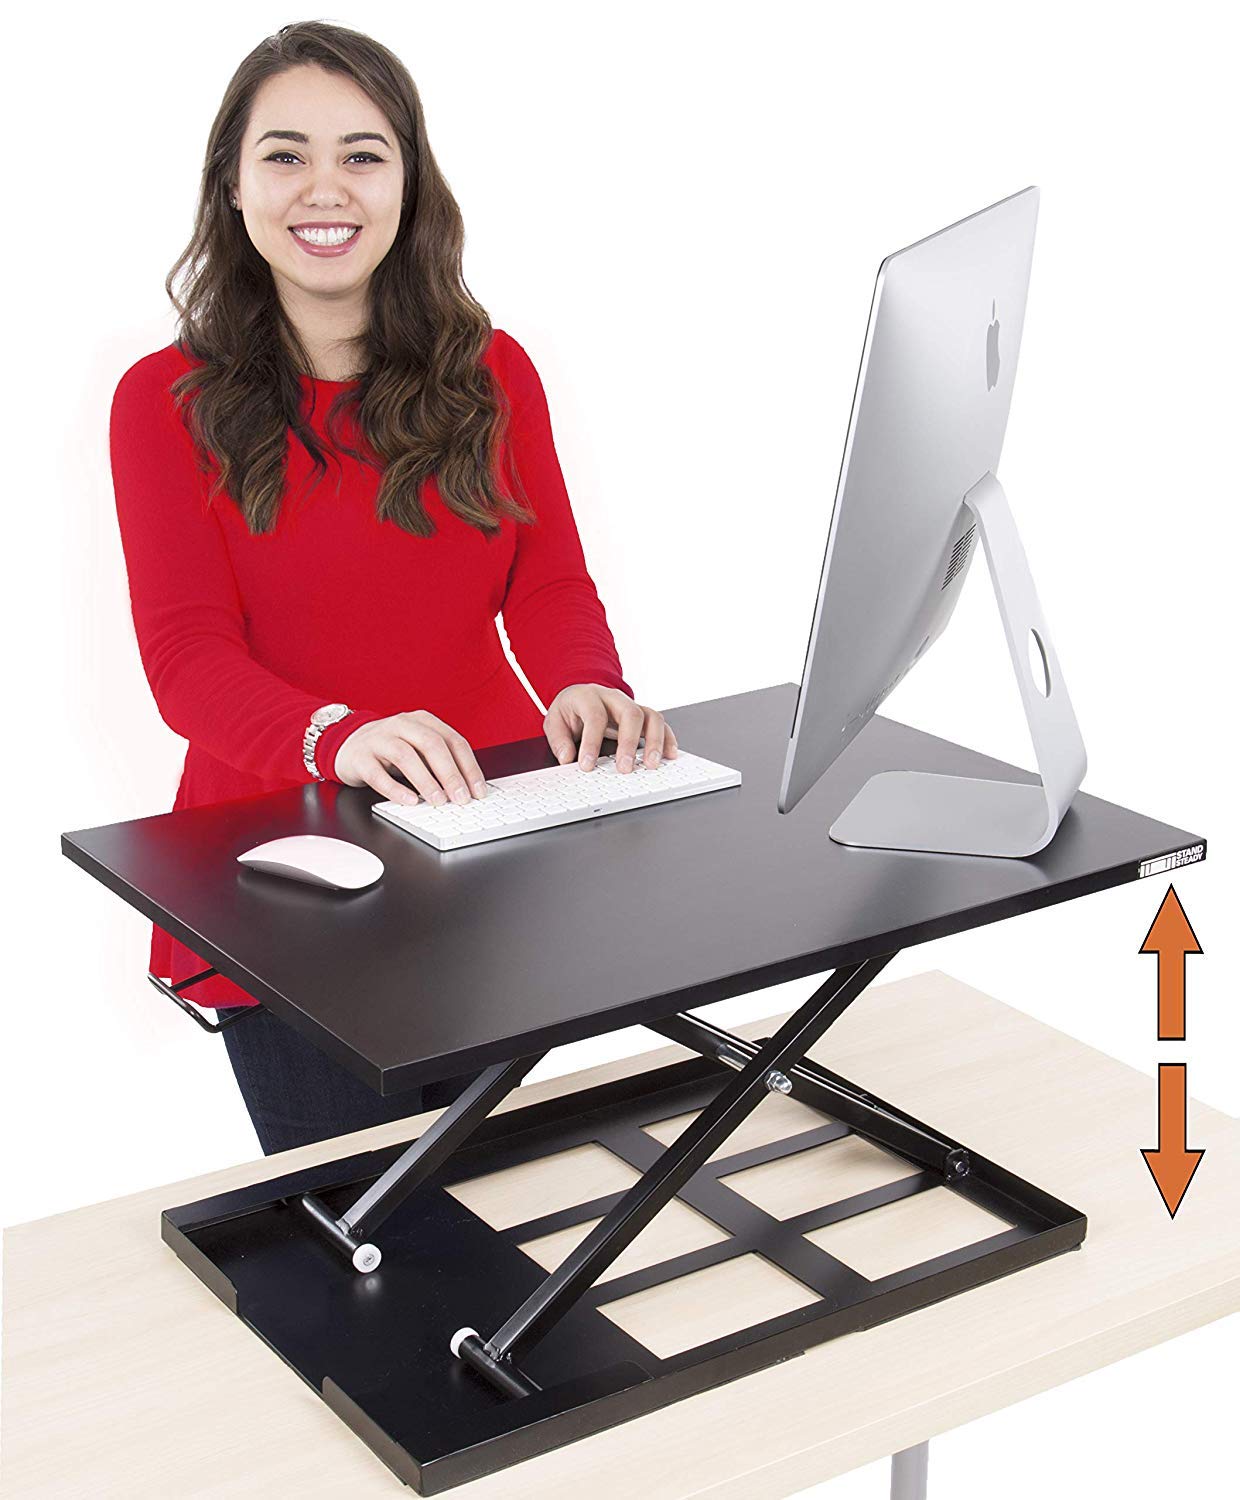 MEDA Standing Desk  Instantly convert Any Desk into a SitStand up Desk, Height-Adjustable, Fully Assembled Desk converter (Black